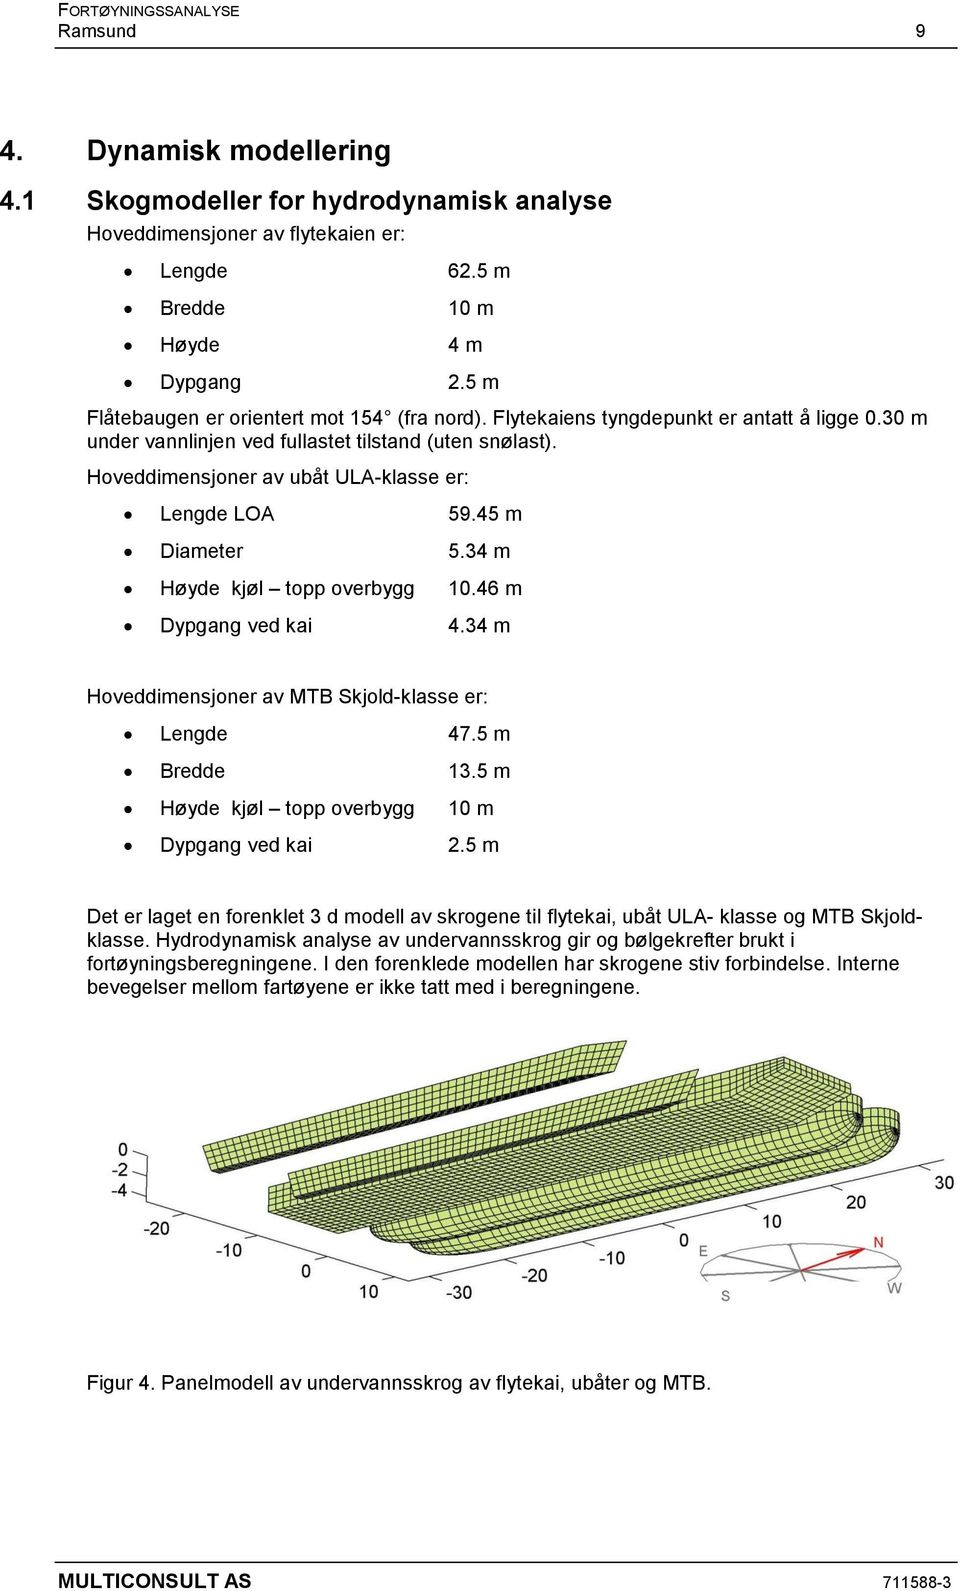 Hoveddimensjoner av ubåt ULA-klasse er: Lengde LOA 59.45 m Diameter 5.34 m Høyde kjøl topp overbygg 10.46 m Dypgang ved kai 4.34 m Hoveddimensjoner av MTB Skjold-klasse er: Lengde 47.5 m Bredde 13.